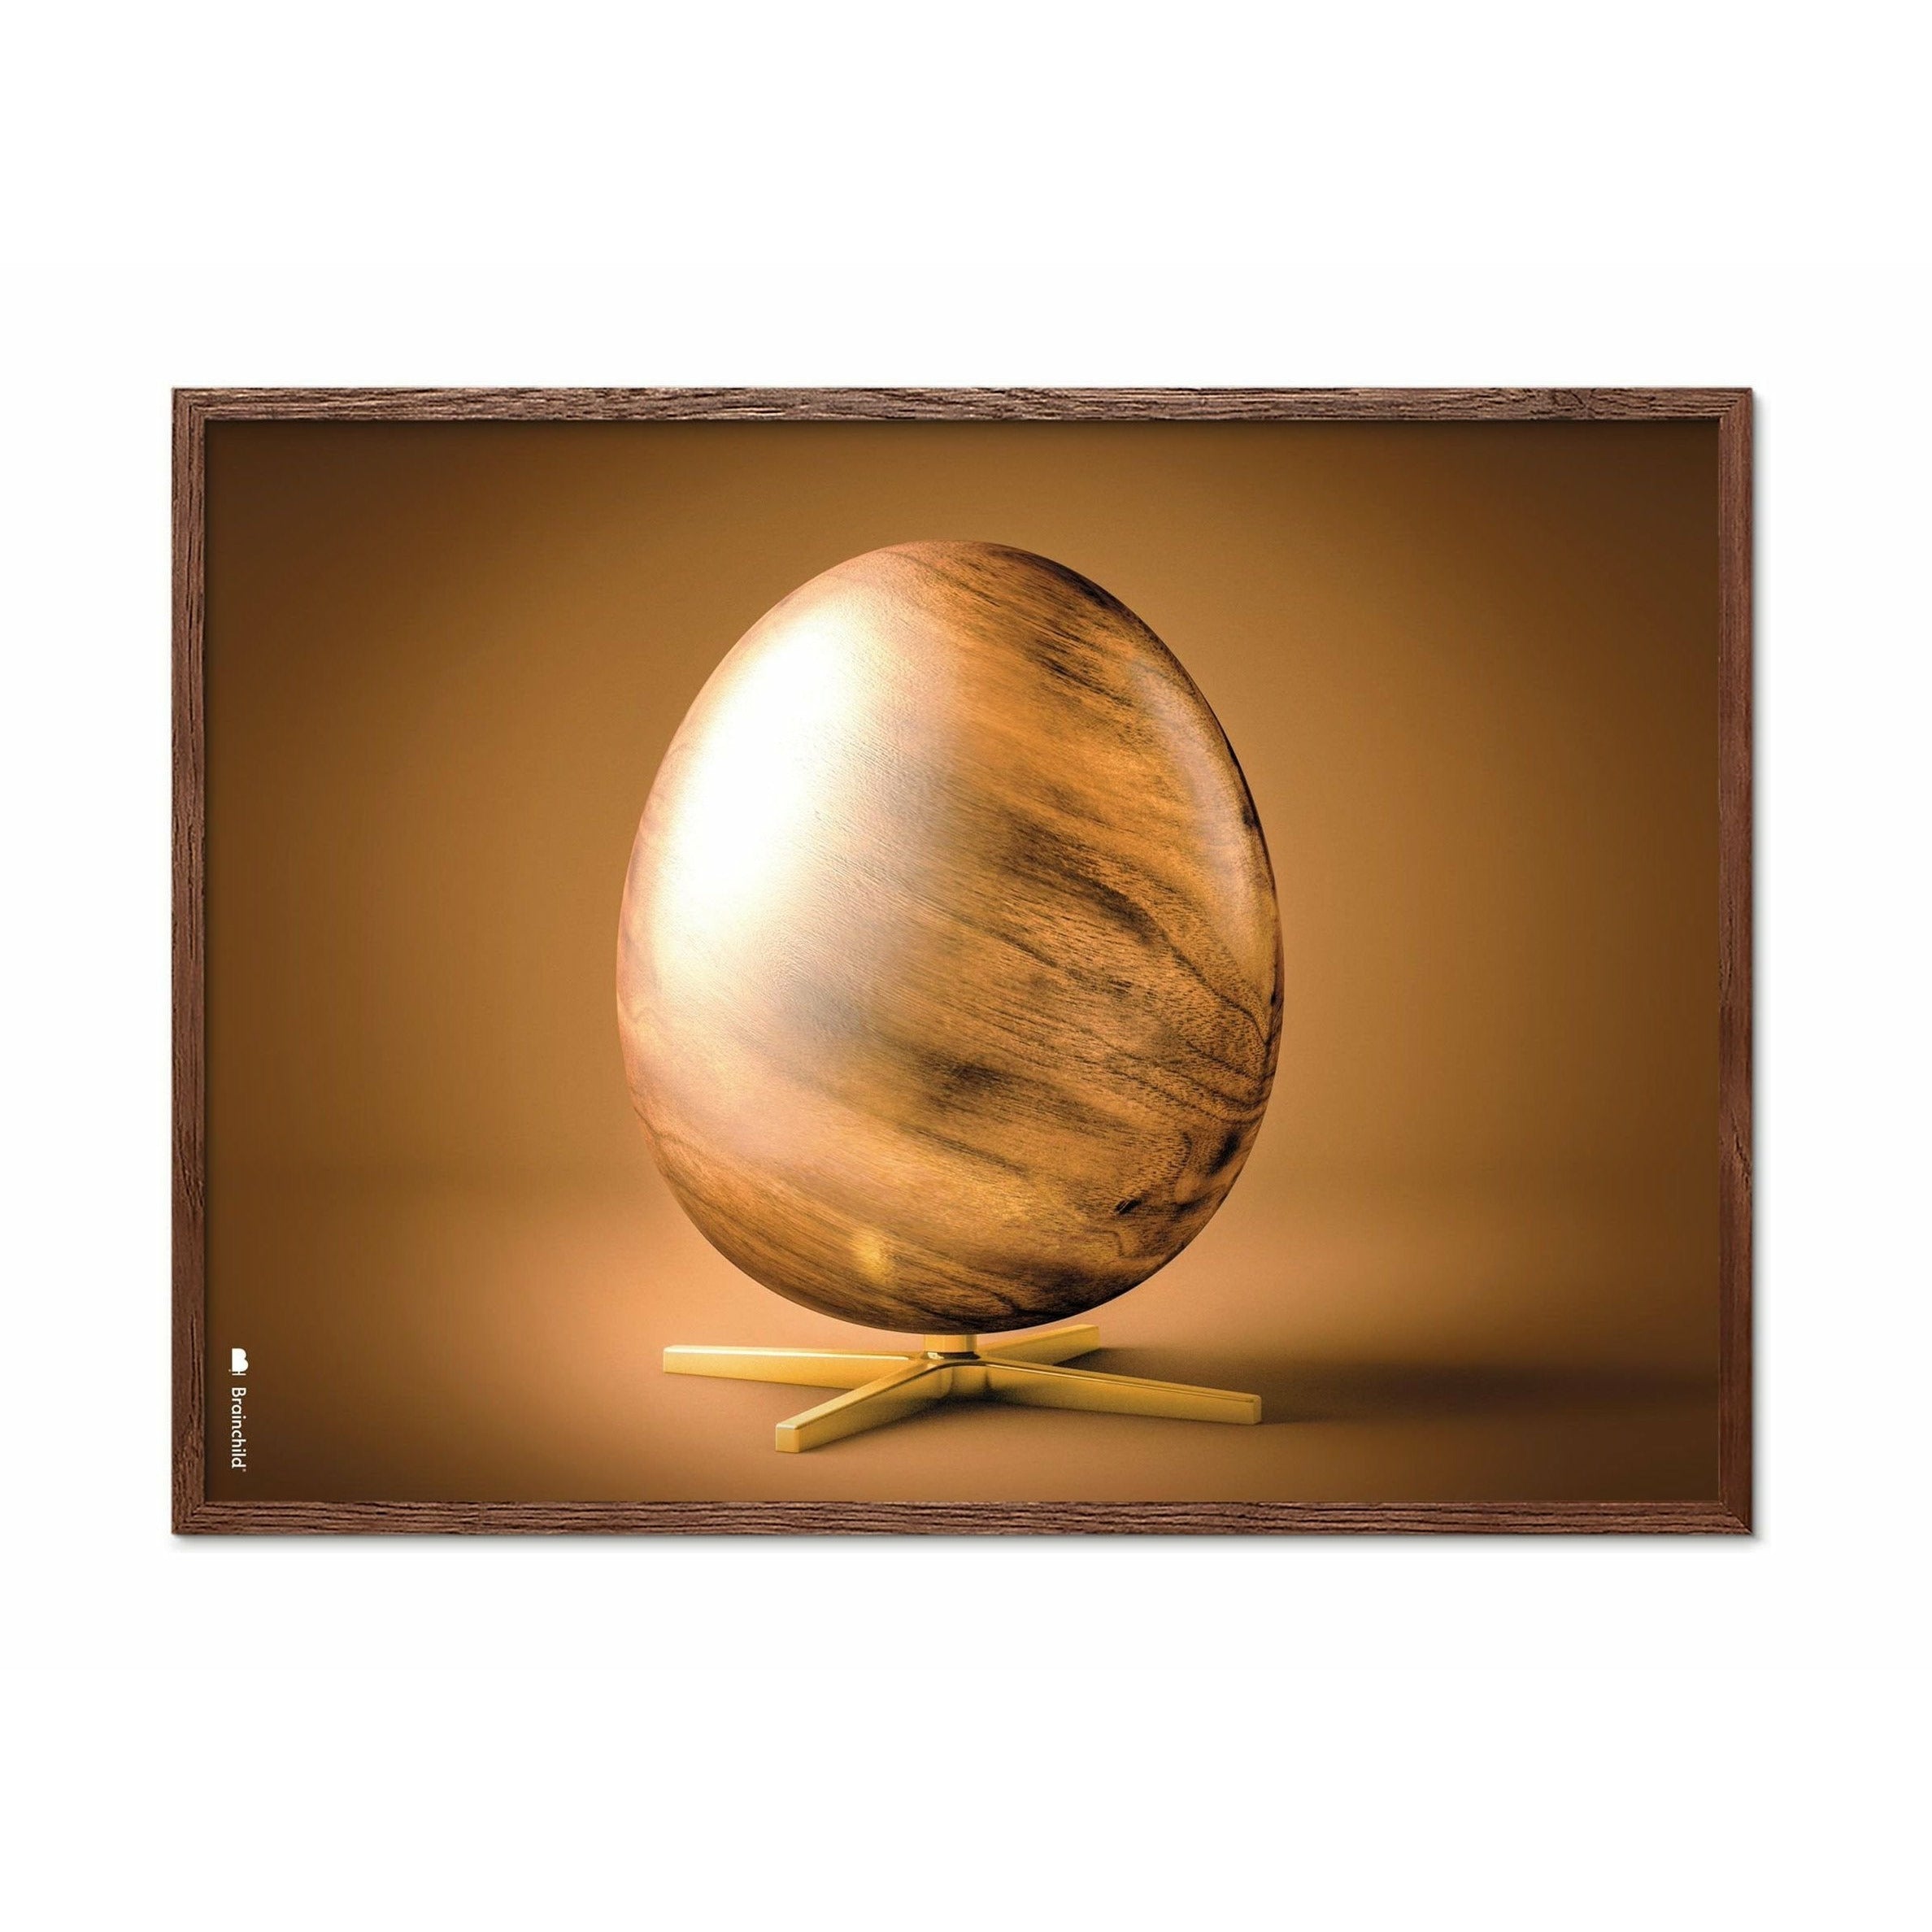 Poster in formato croce di uovo di prima cosa, telaio in legno scuro A5, marrone